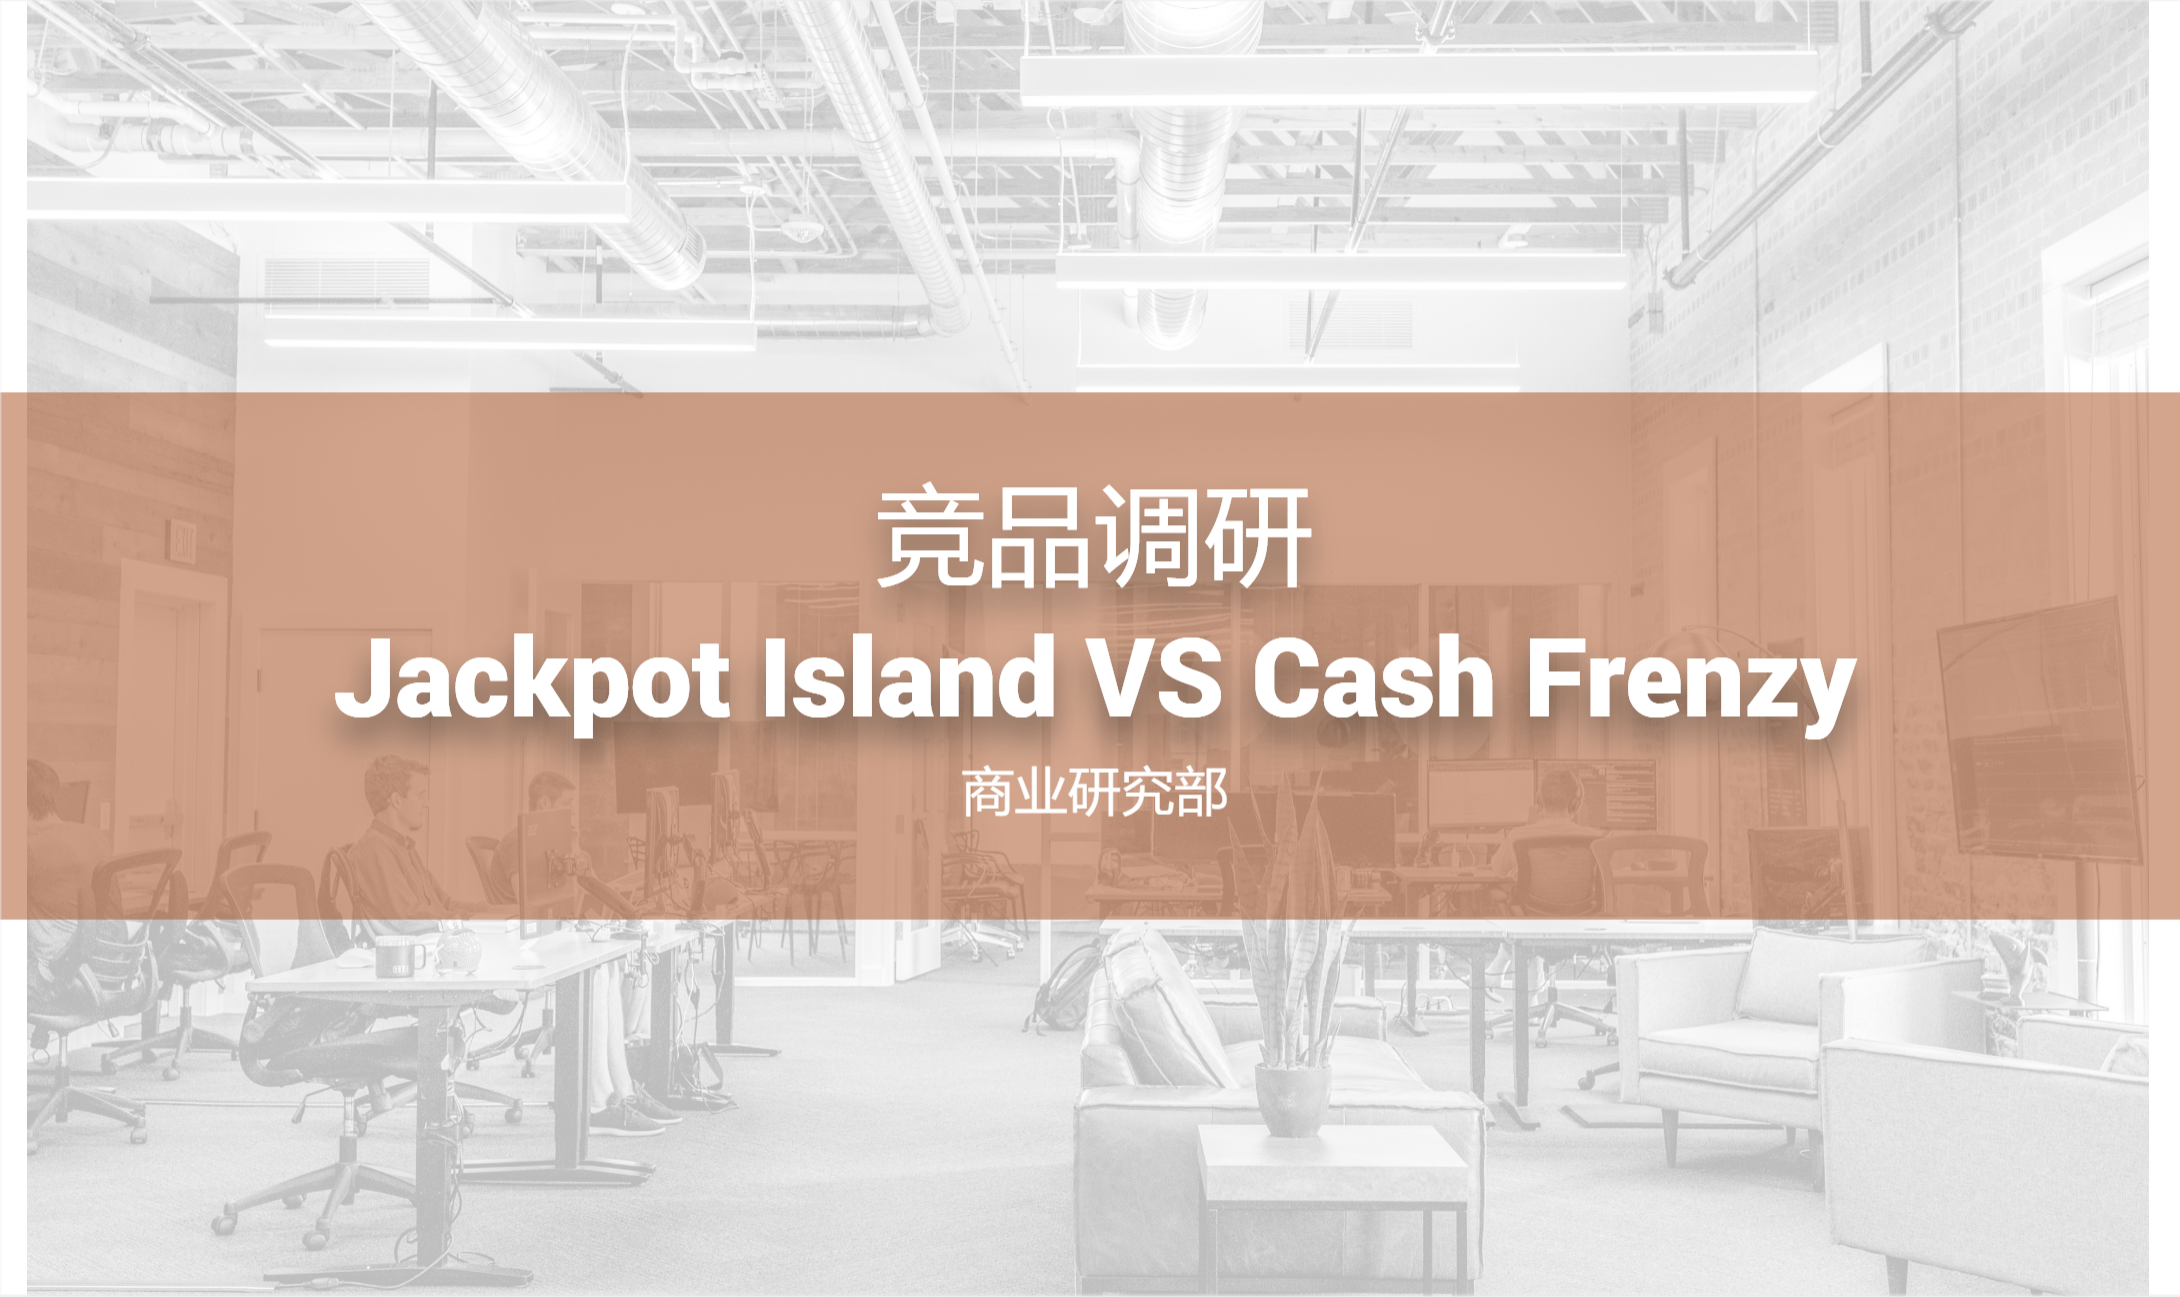 竞品调研-Jackpot Island VS Cash Frenzy